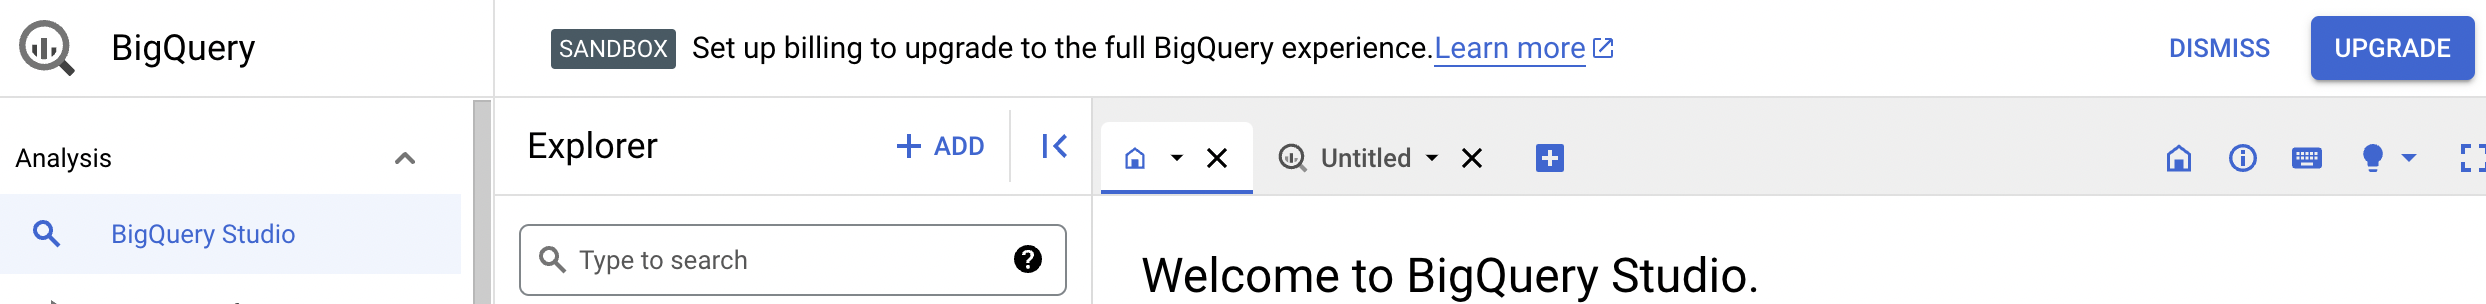 El aviso de confirmación proporciona la opción para actualizar a la experiencia completa de BigQuery.